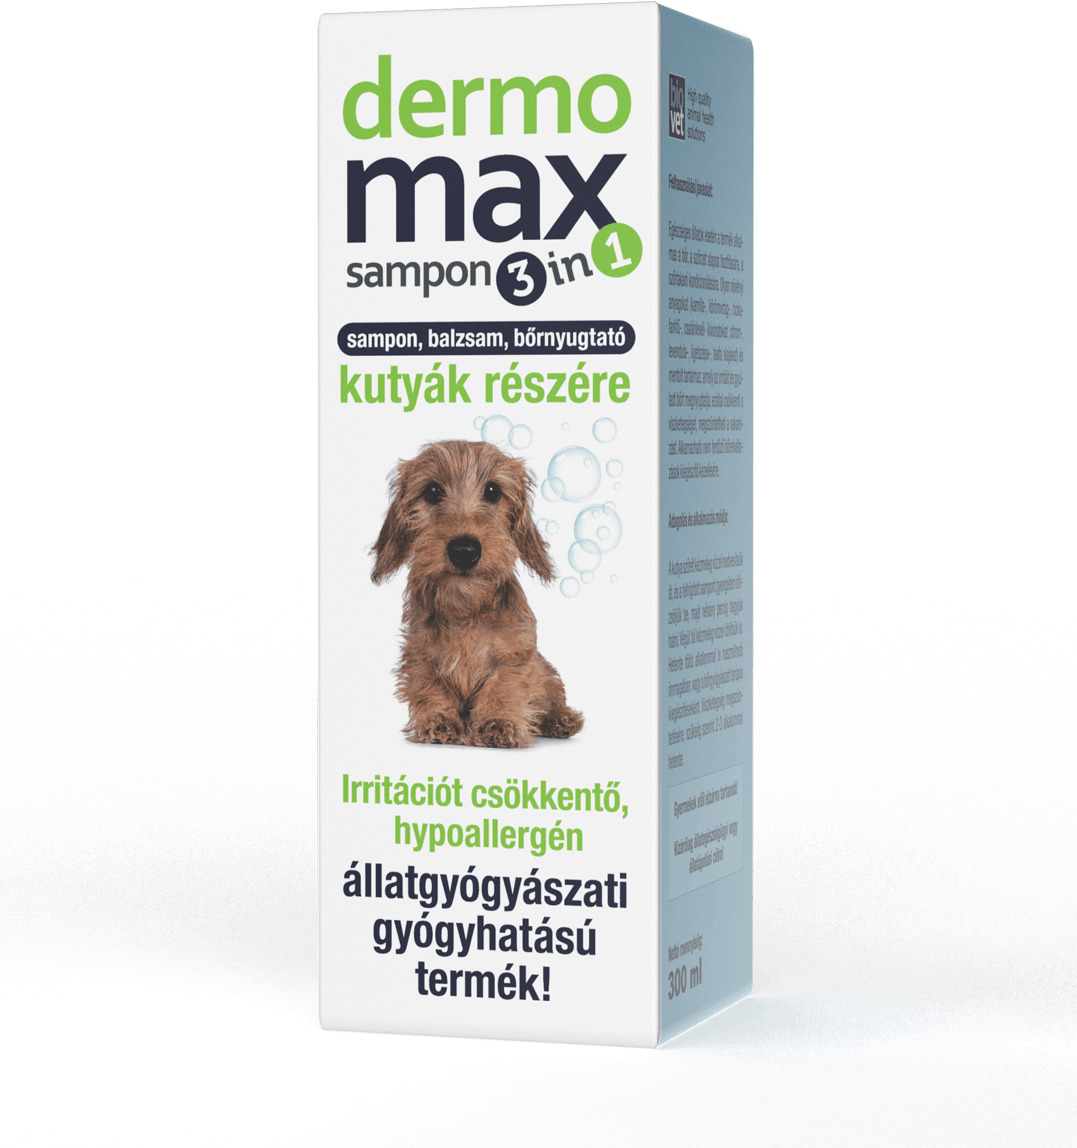 Dermomax sampon 3 in 1 - Șampon și balsam hipoalergenic pentru câini care reduce iritațiile